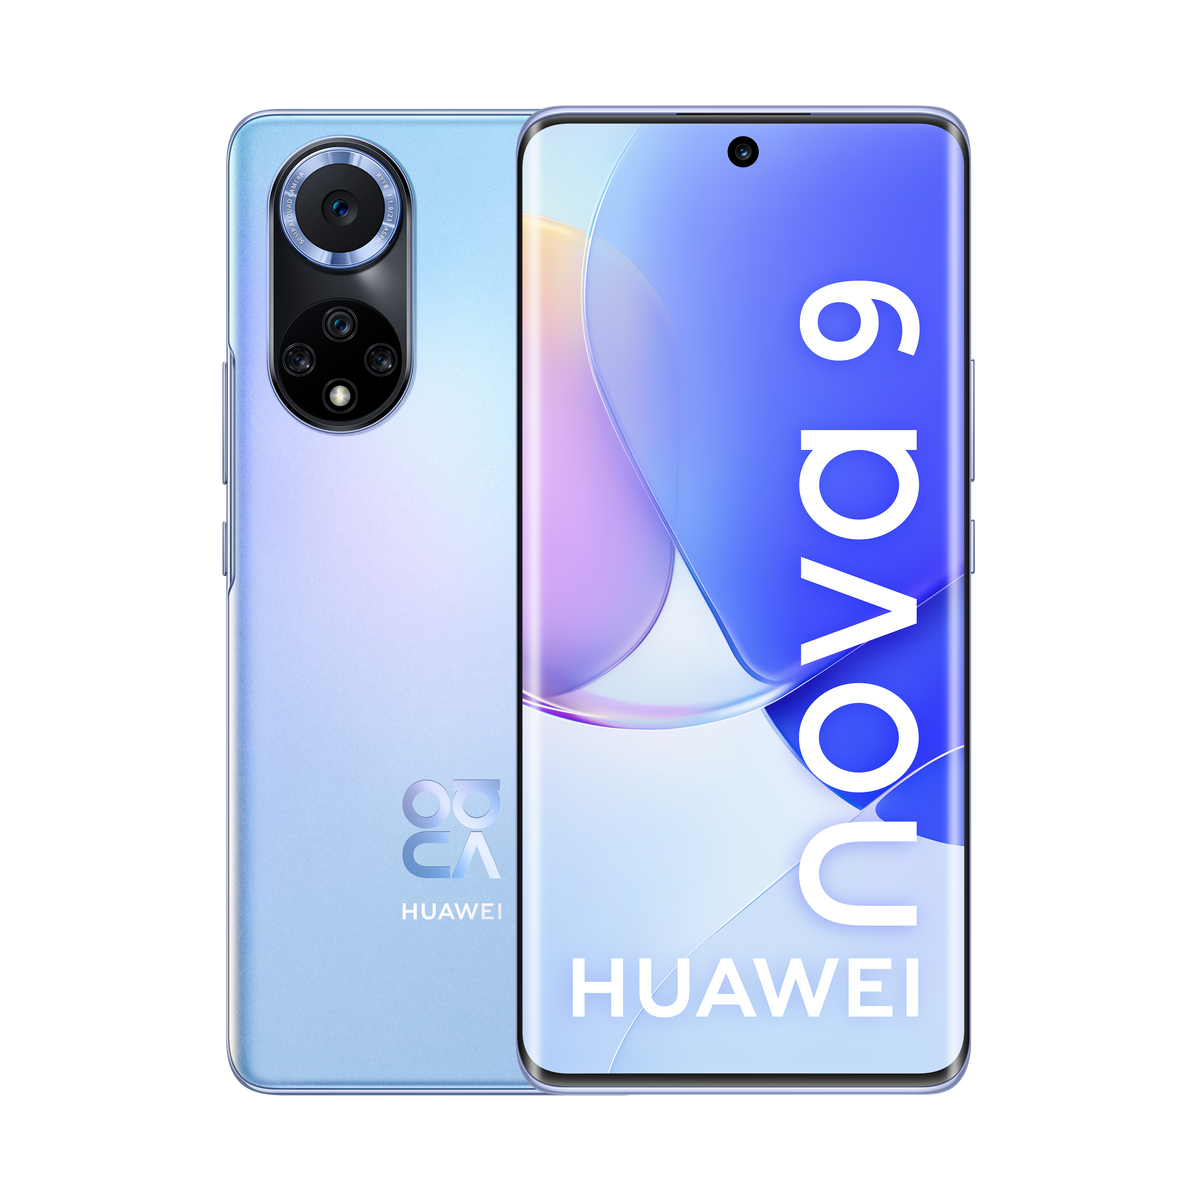 GB 128 Nova starry HUAWEI SIM Dual DS 9 128 Blau blue